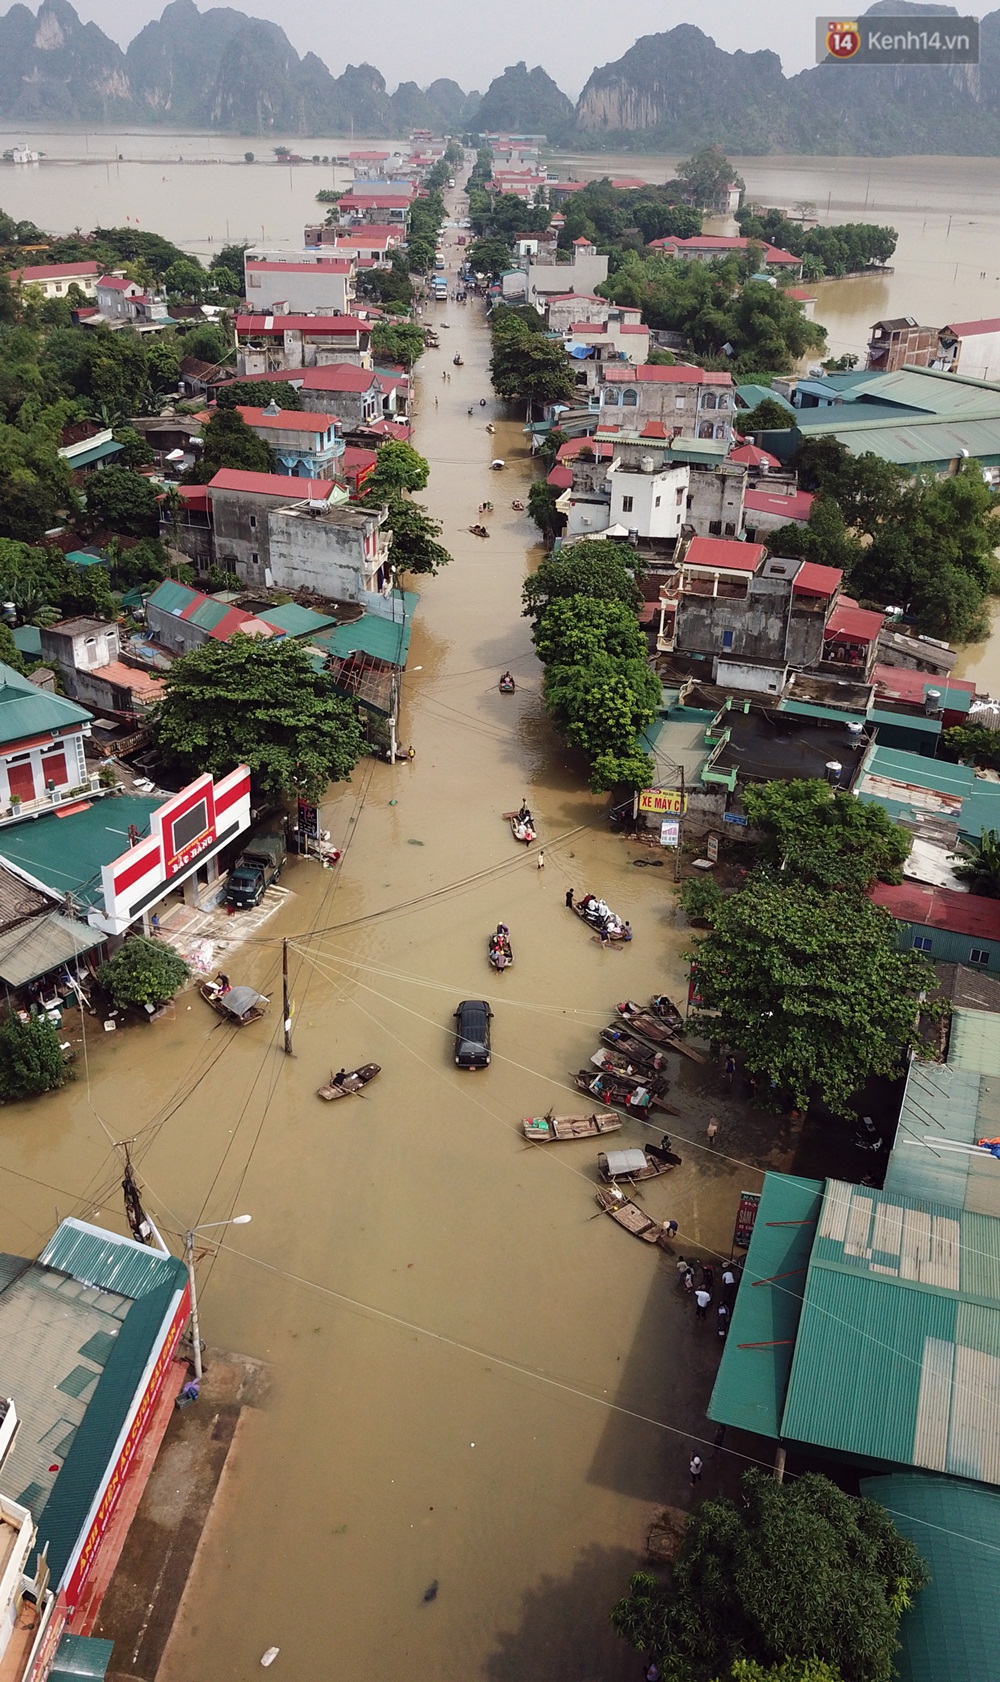 Chùm ảnh: Kiếm bộn tiền từ việc chèo đò qua điểm ngập nặng trong đợt lụt lịch sử tại Ninh Bình - Ảnh 3.